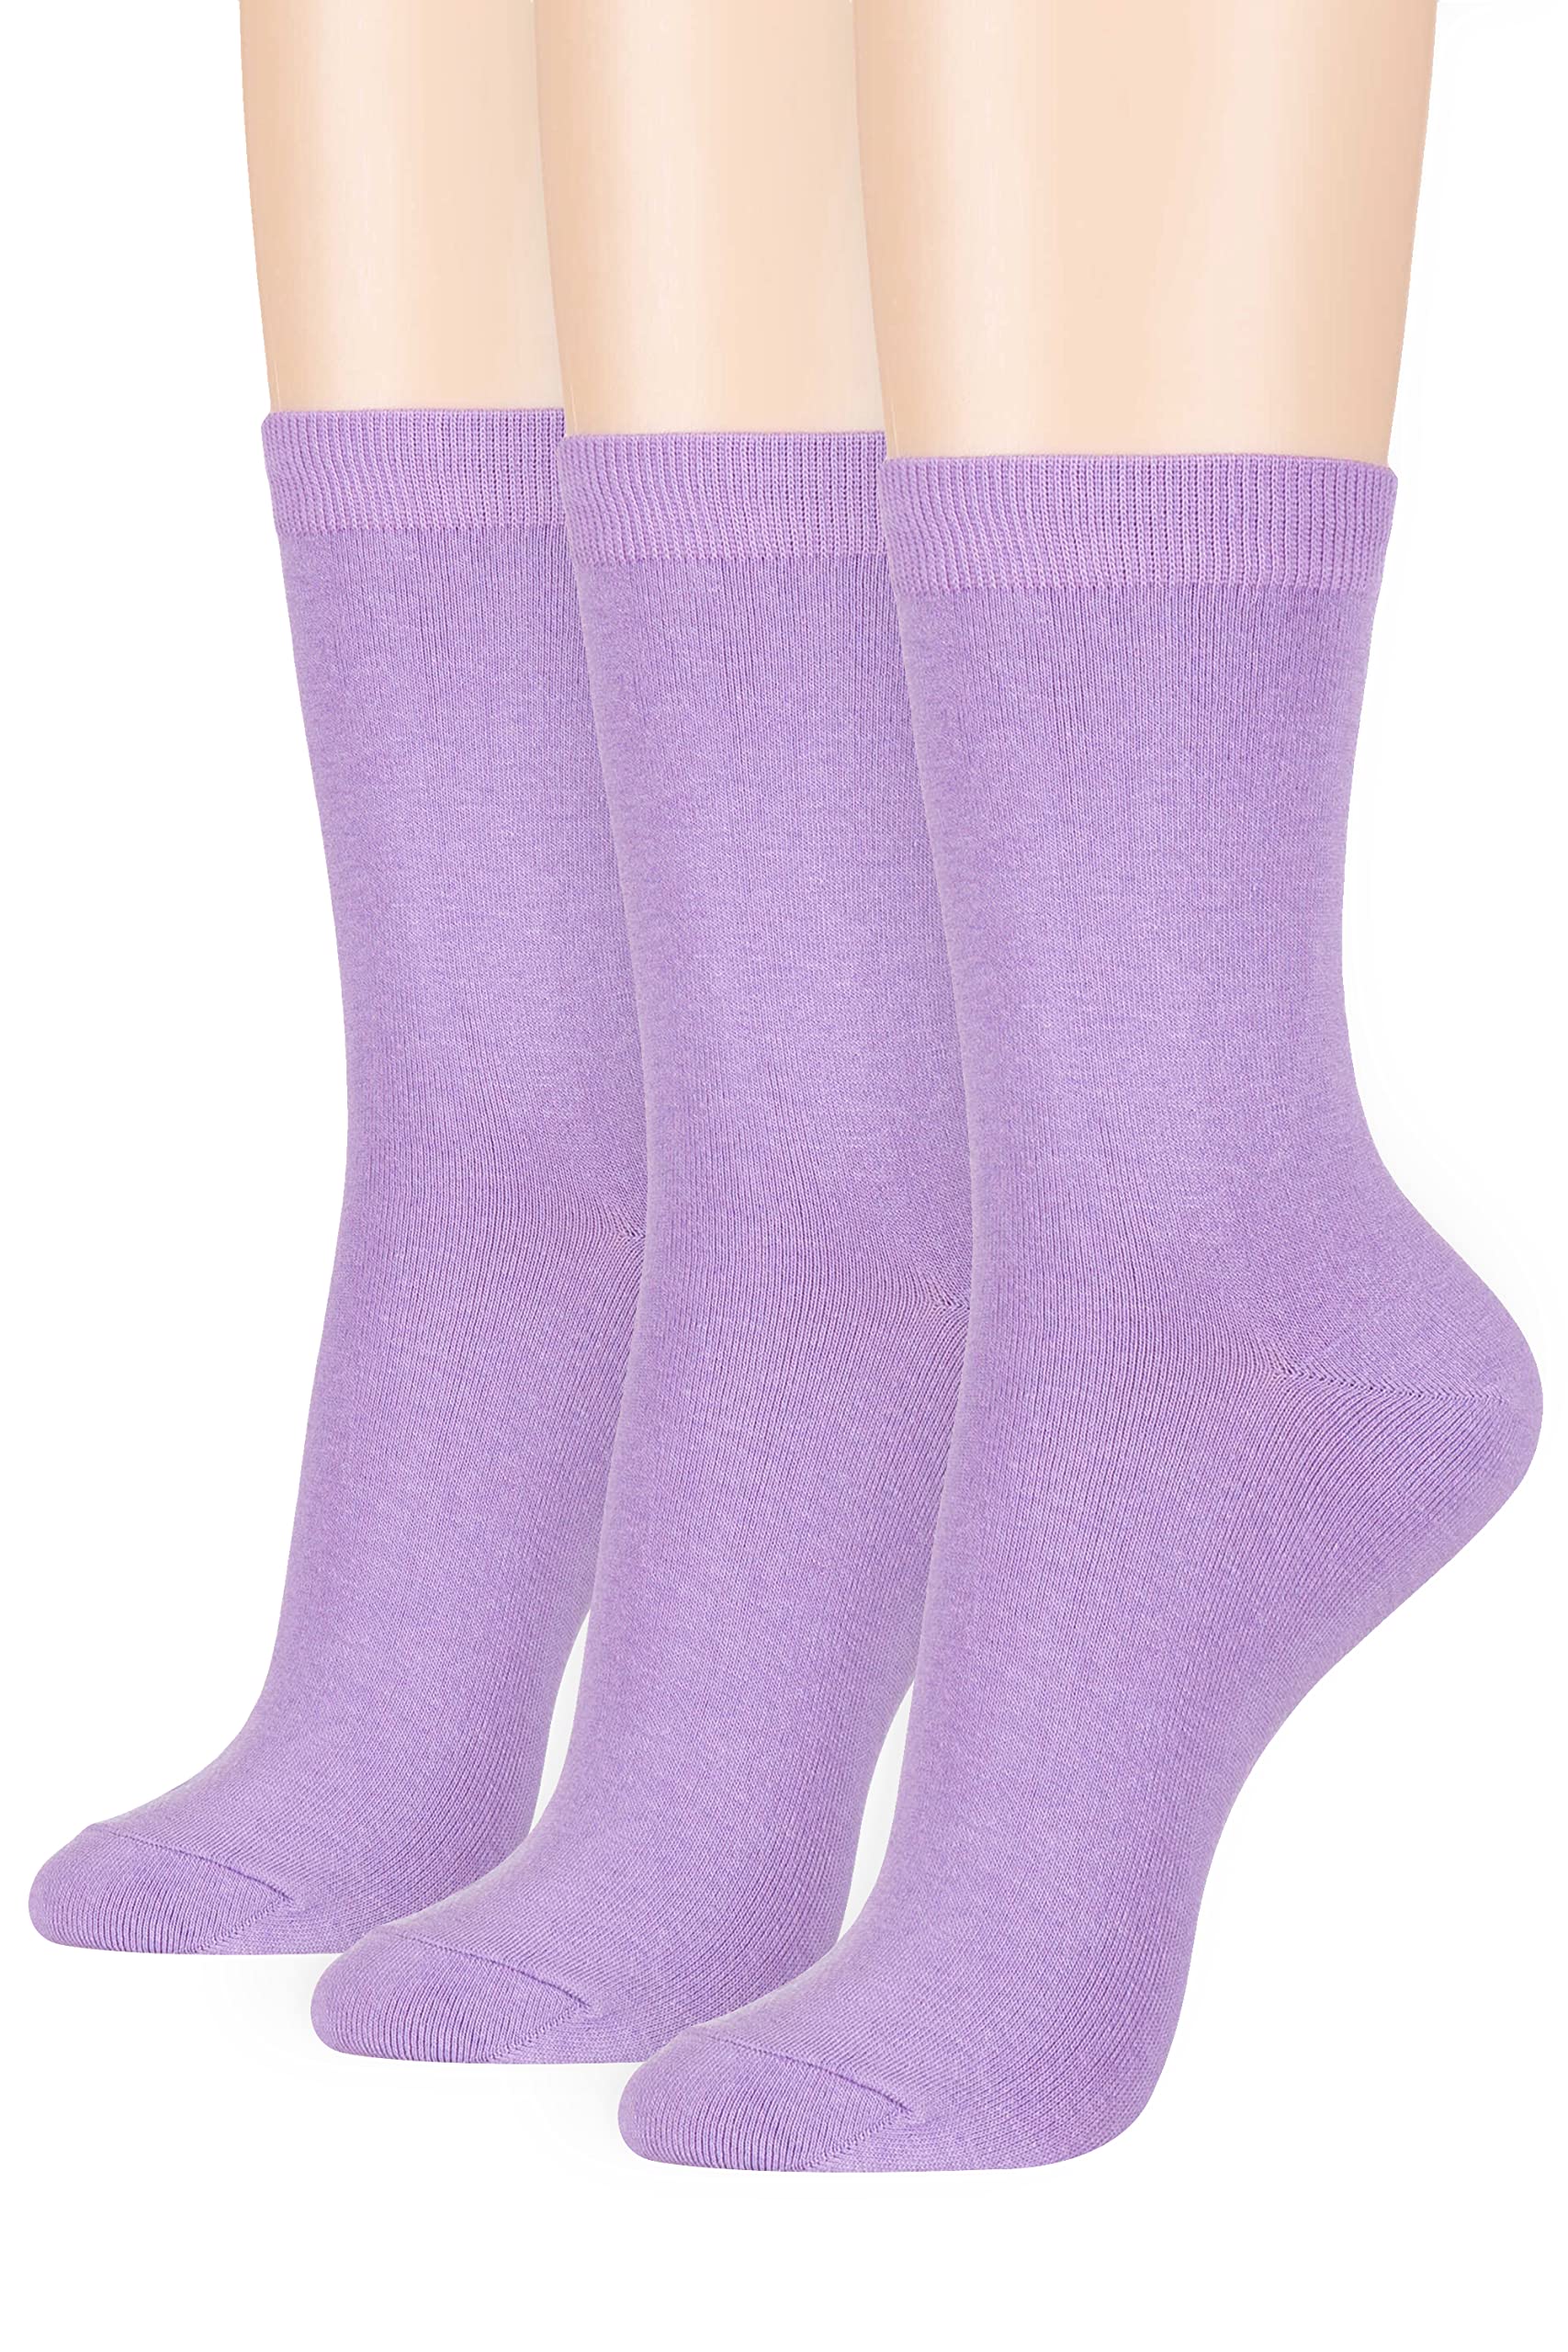 Women's Basic Socks_Pastel Lavender